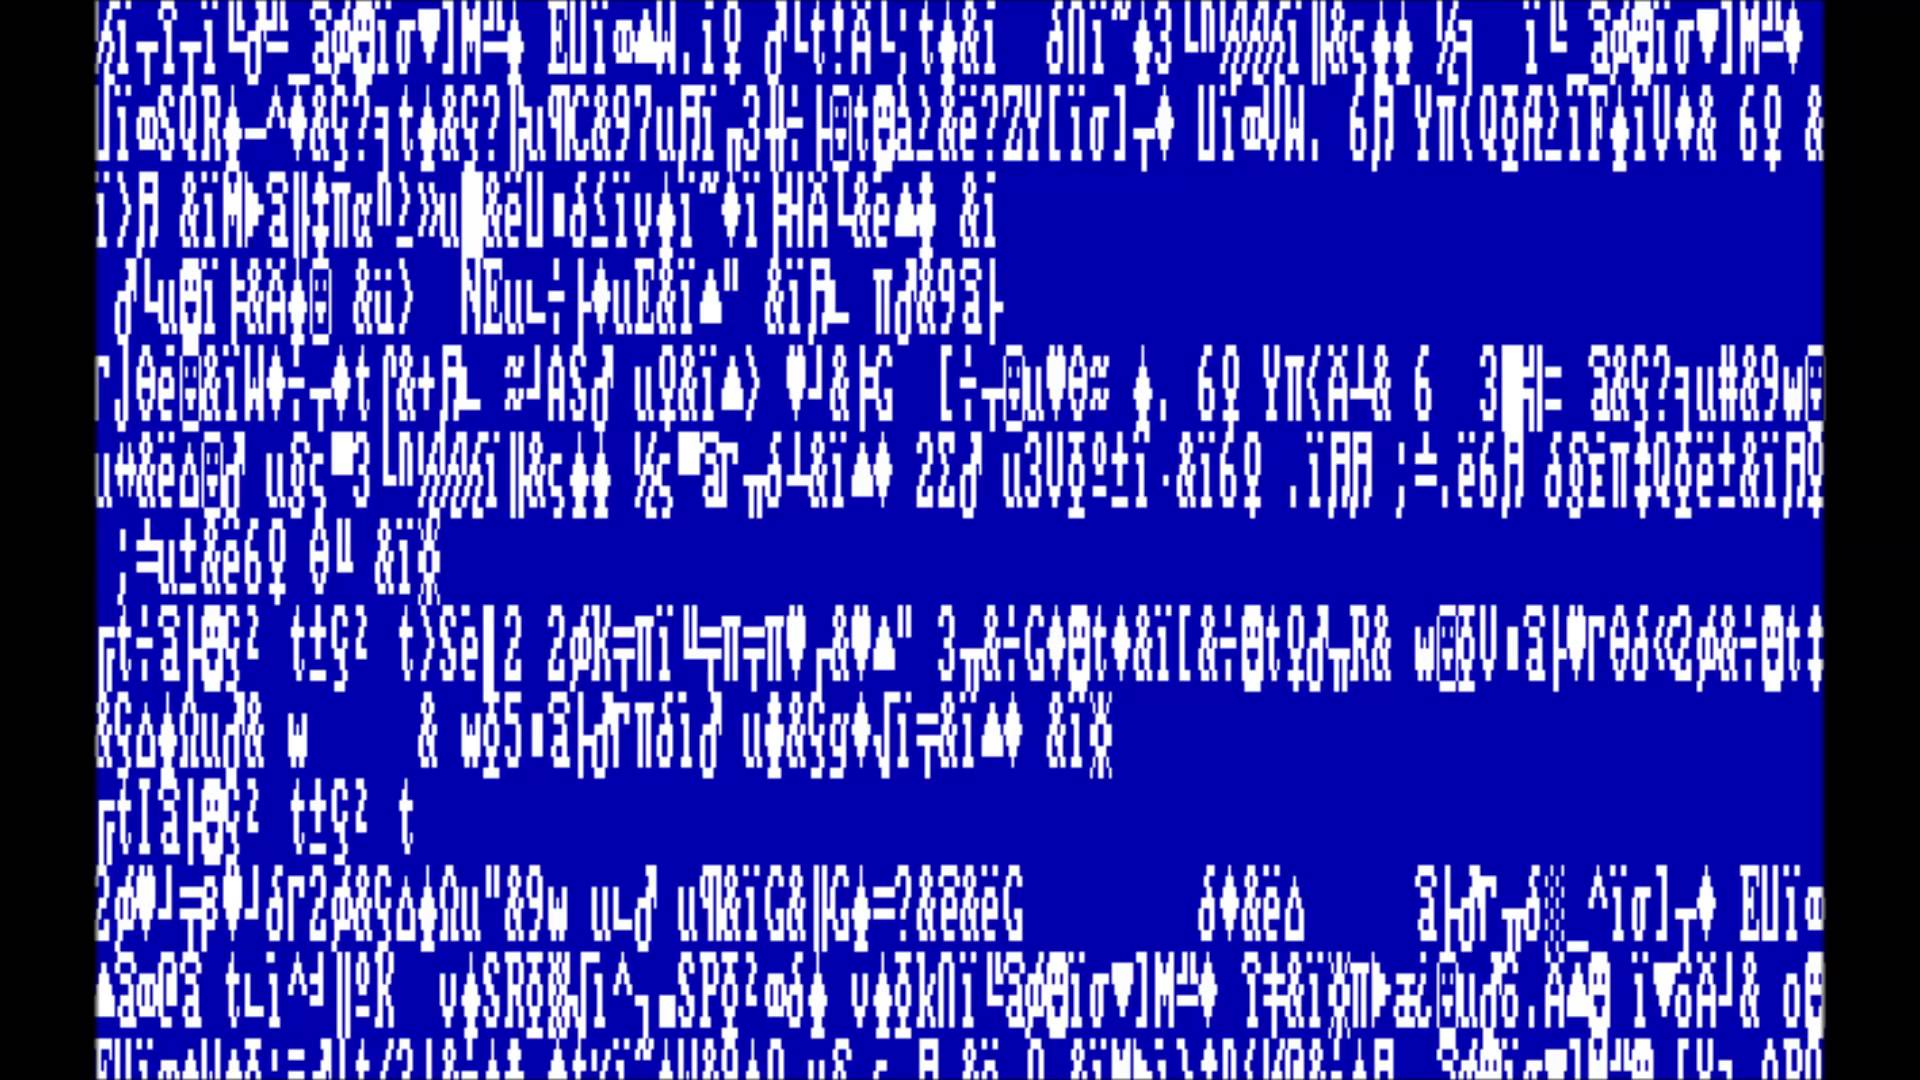 Синий экран без надписей. Синий экран смерти Windows 1. Экран бсод. Экран смерти на виндовс 1.0. Синий экран смерти Windows 1.0.